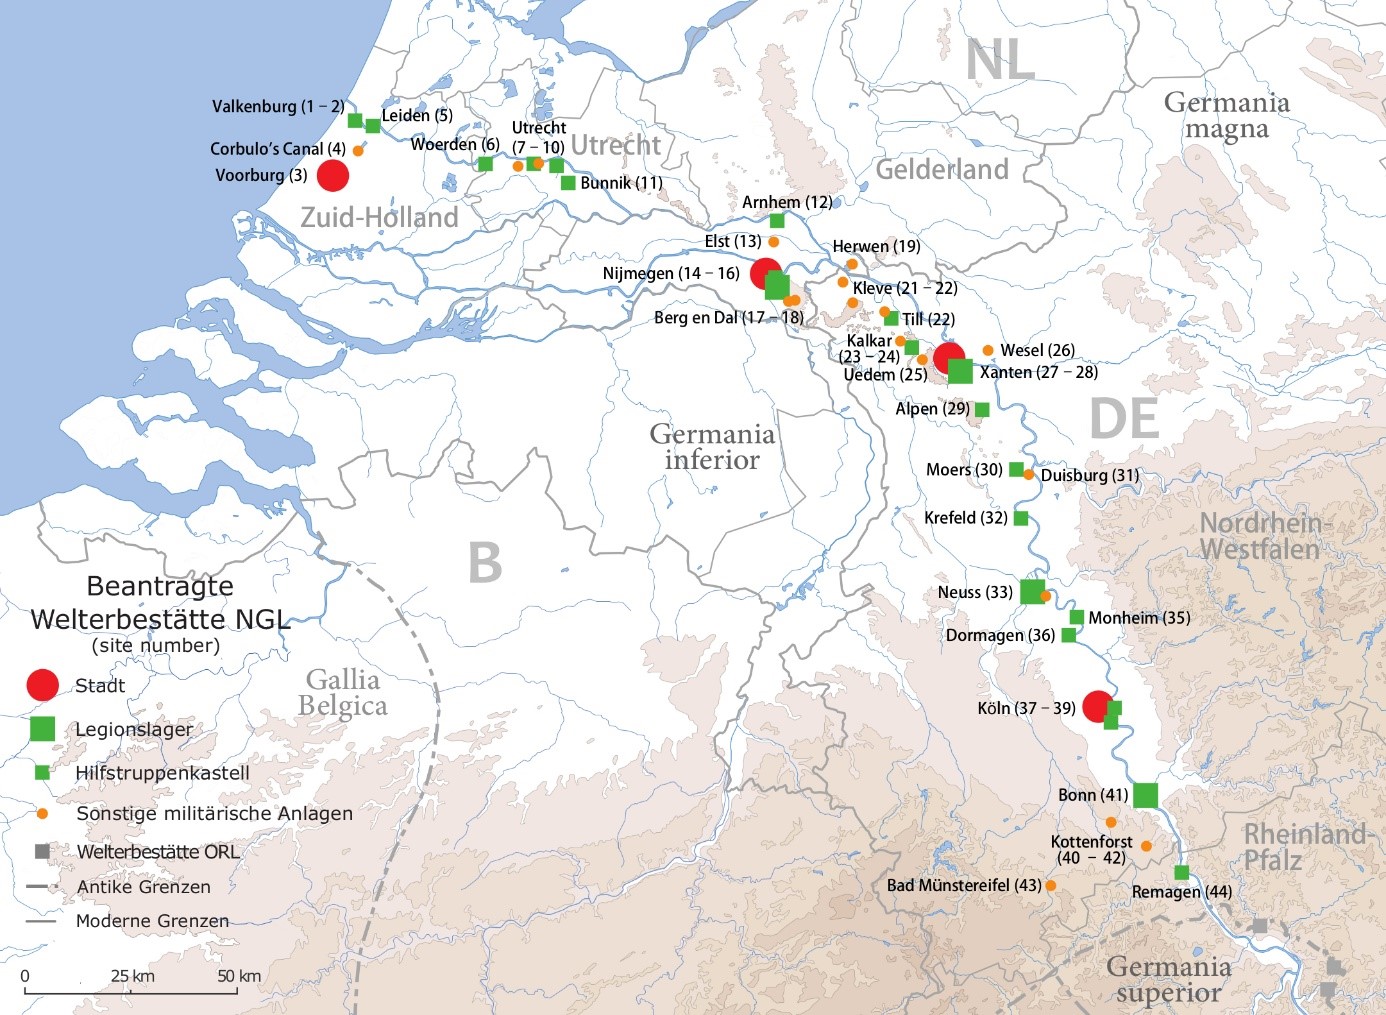 Charakteristisch für den Niedergermanischen Limes ist der komplette Verlauf entlang des Rheins